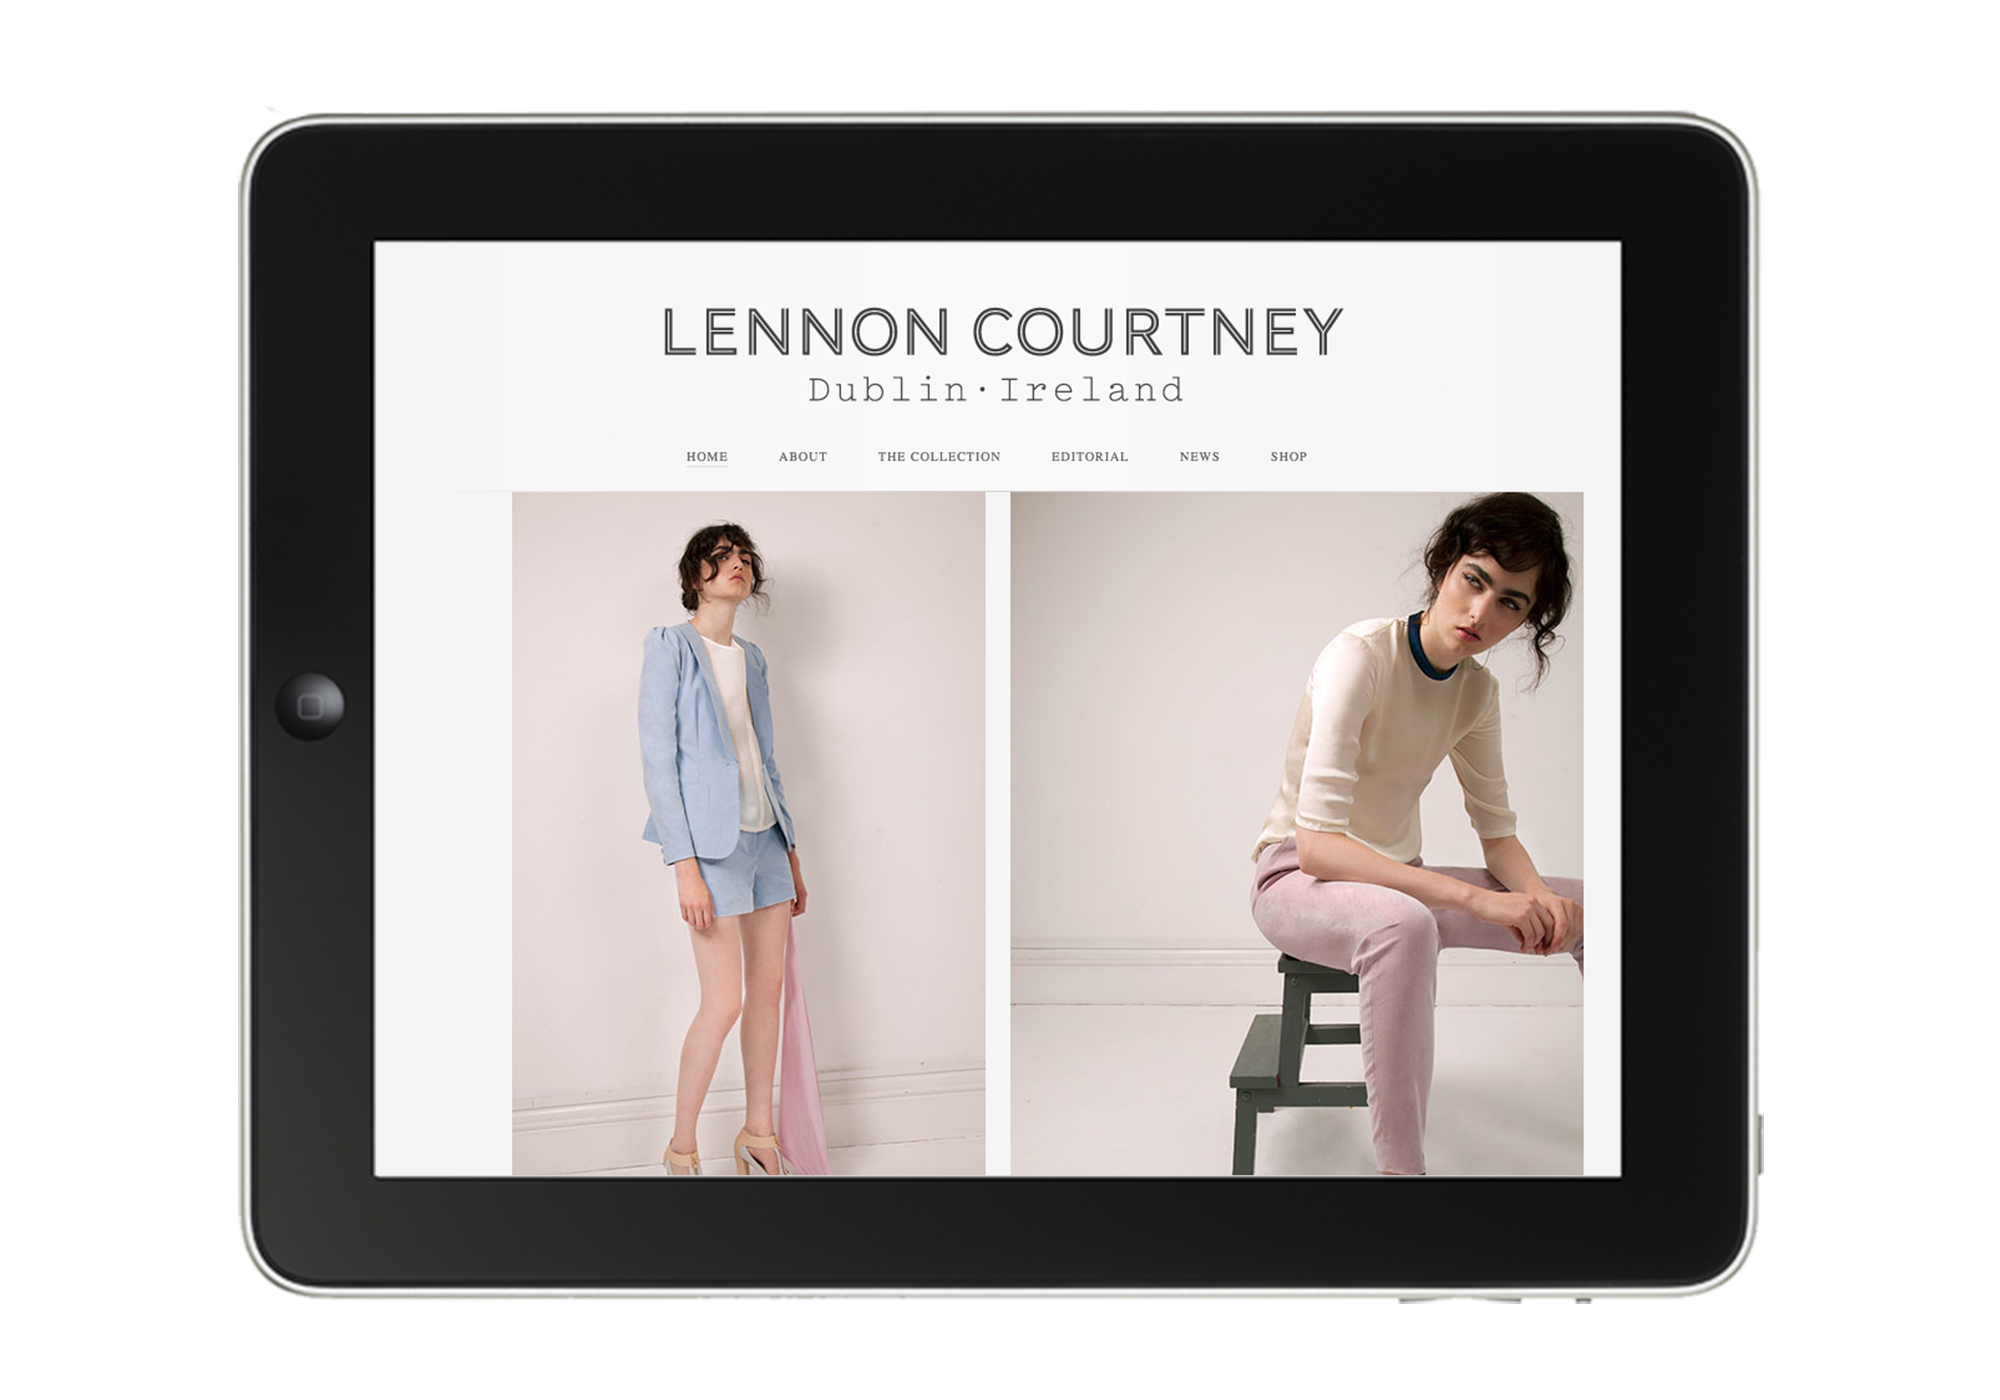 Cover image: Lennon Courtney Website